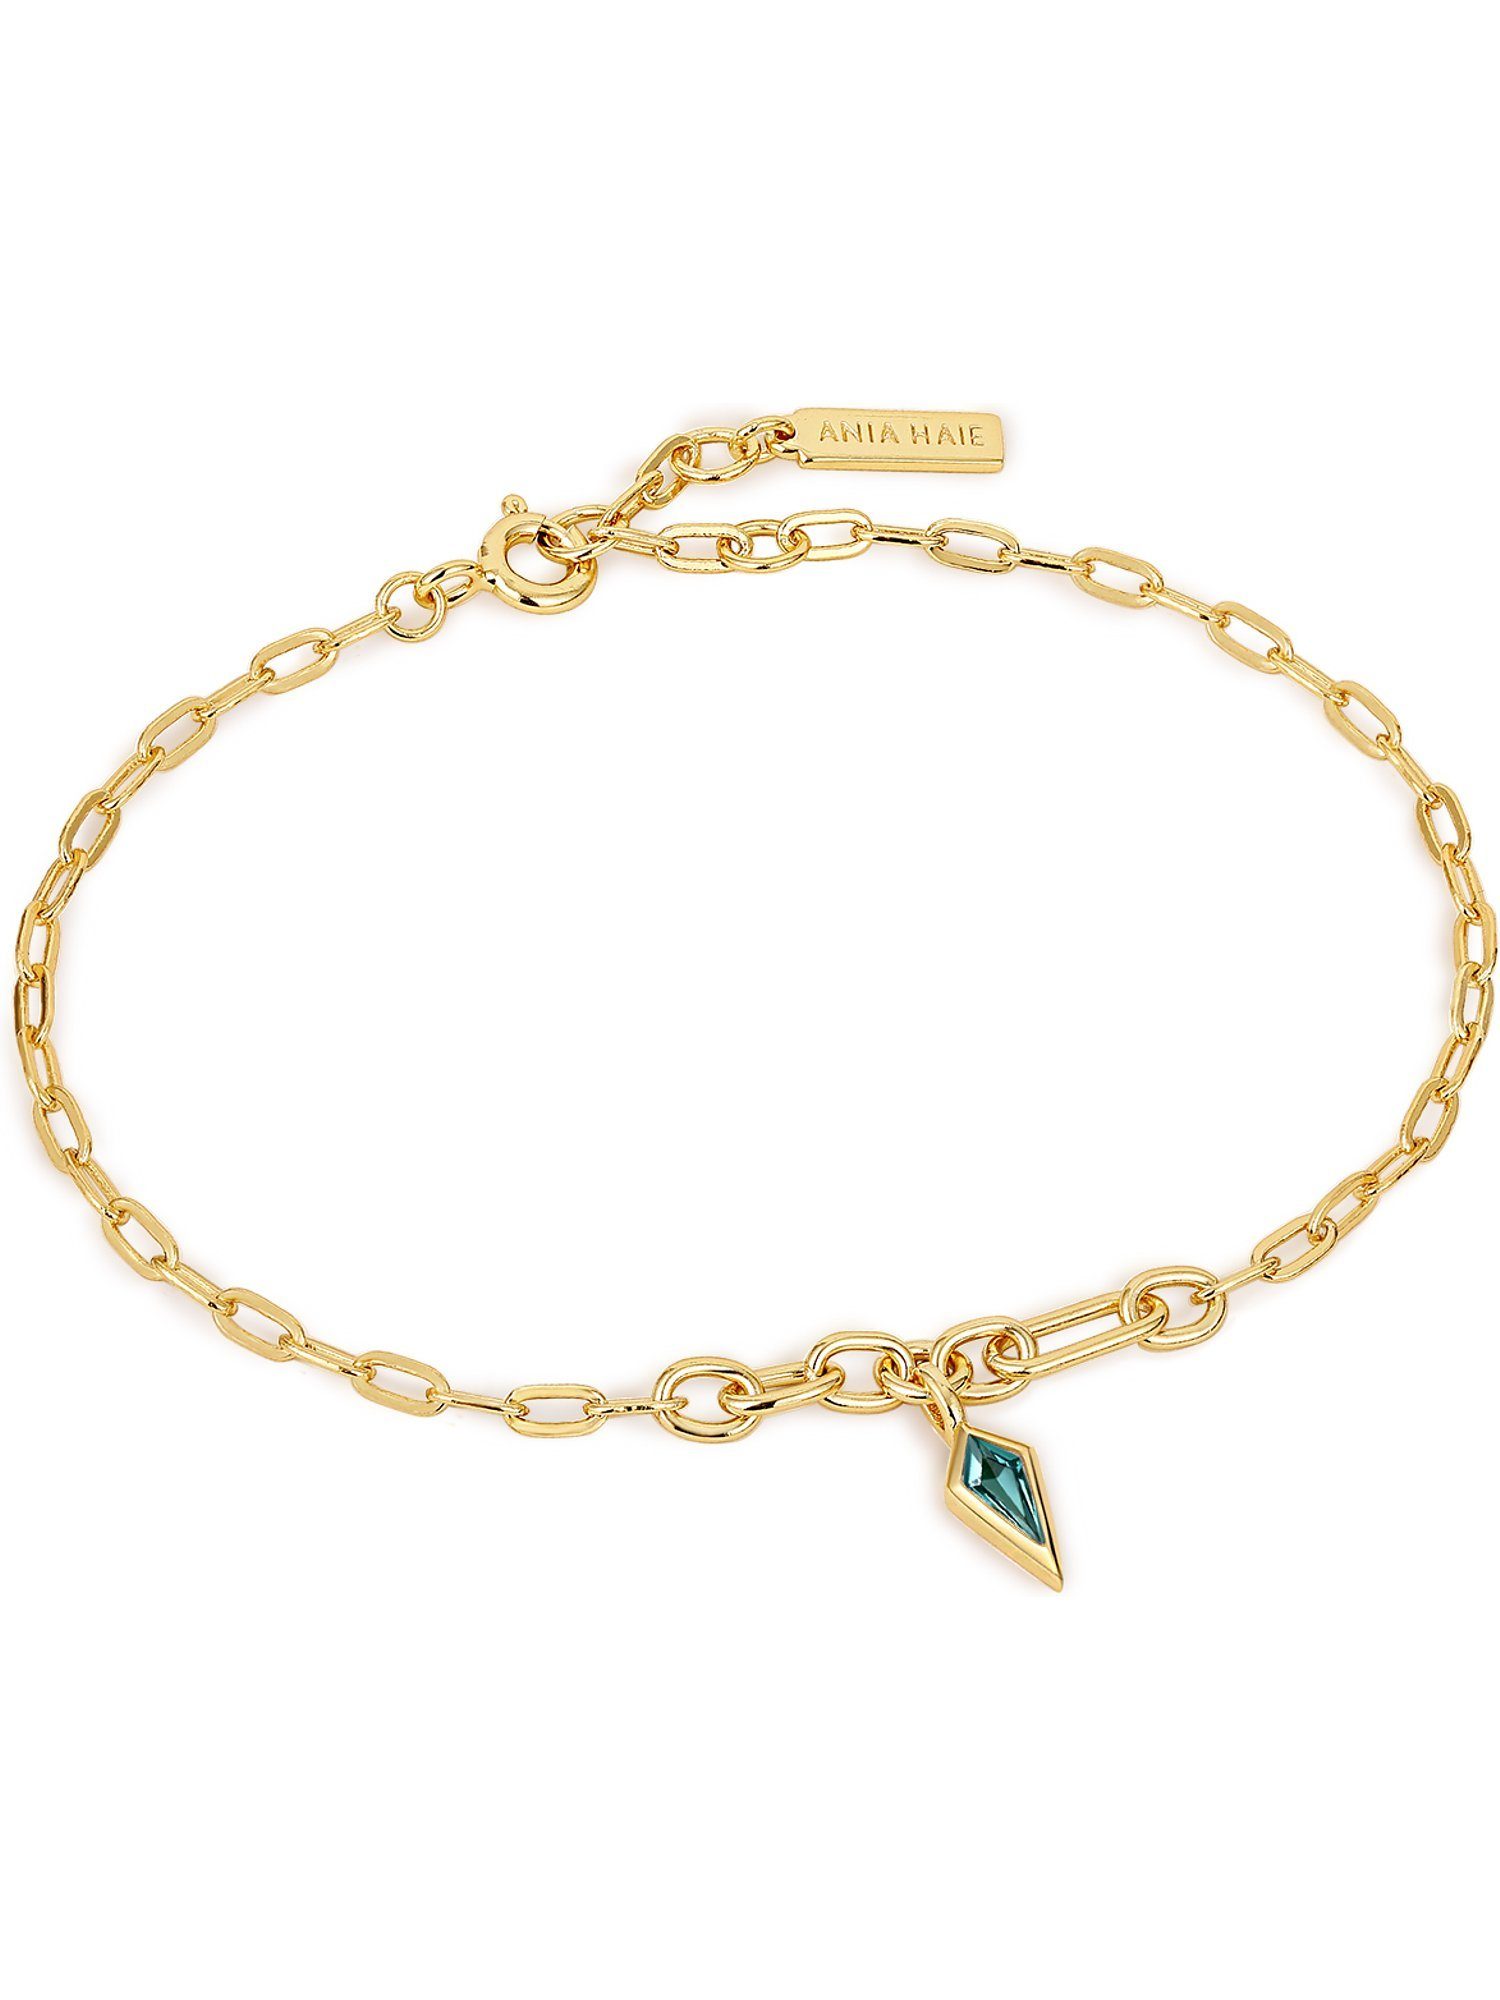 Ania Haie Armband Silber 925er grün gold, Haie trendig Damen-Armband Zirkonia, Ania